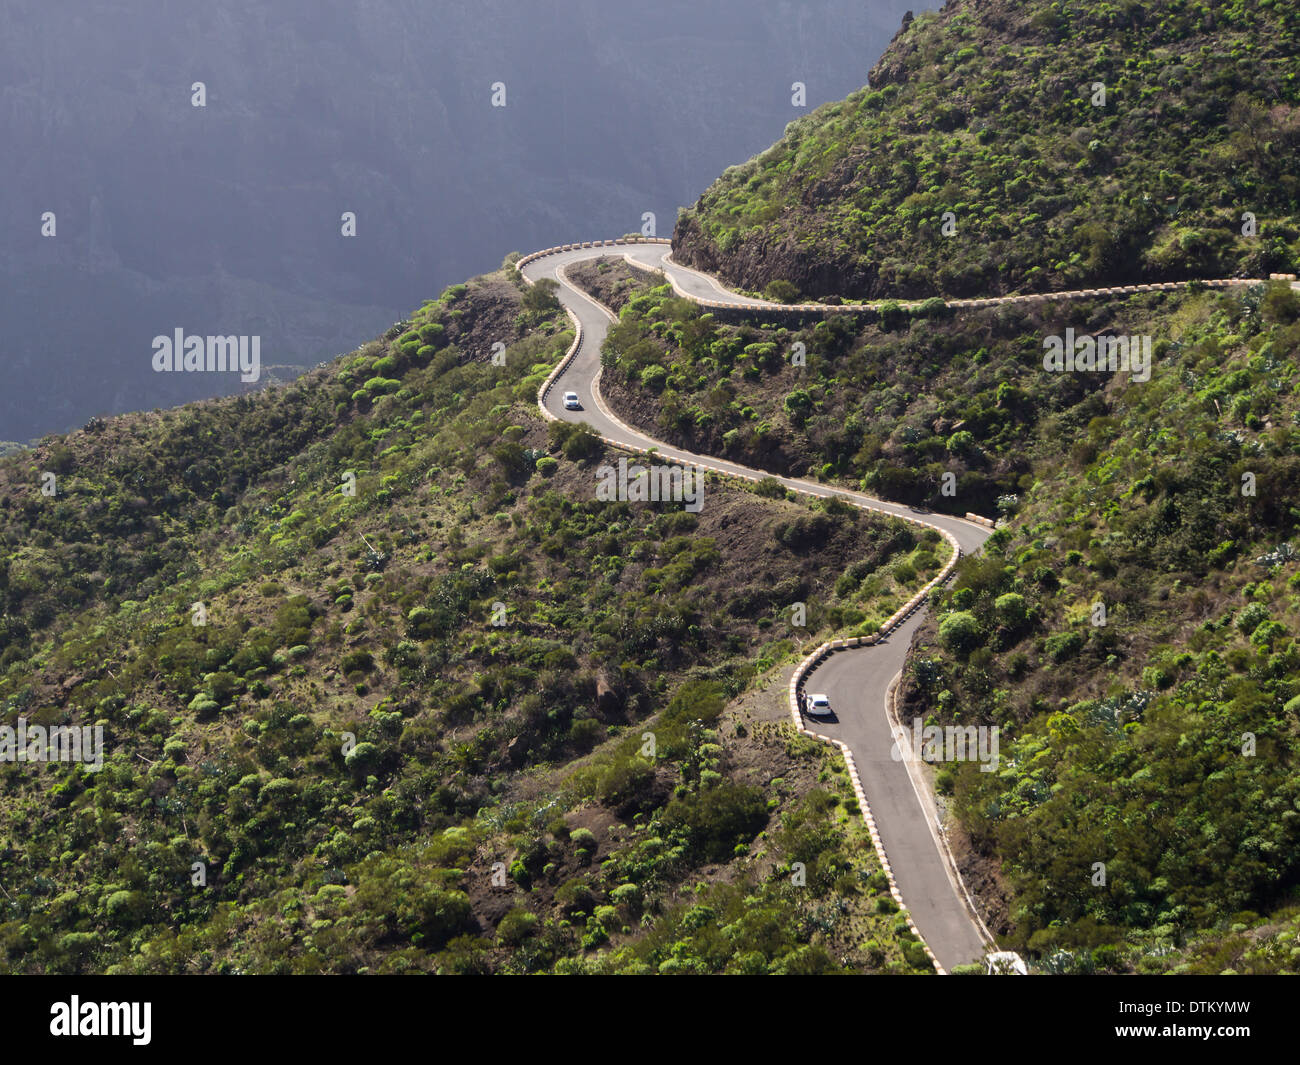 La sezione della strada stretta nella remota valle Masca, Tenerife Canarie Spagna, tornanti e forte inclinazione Foto Stock